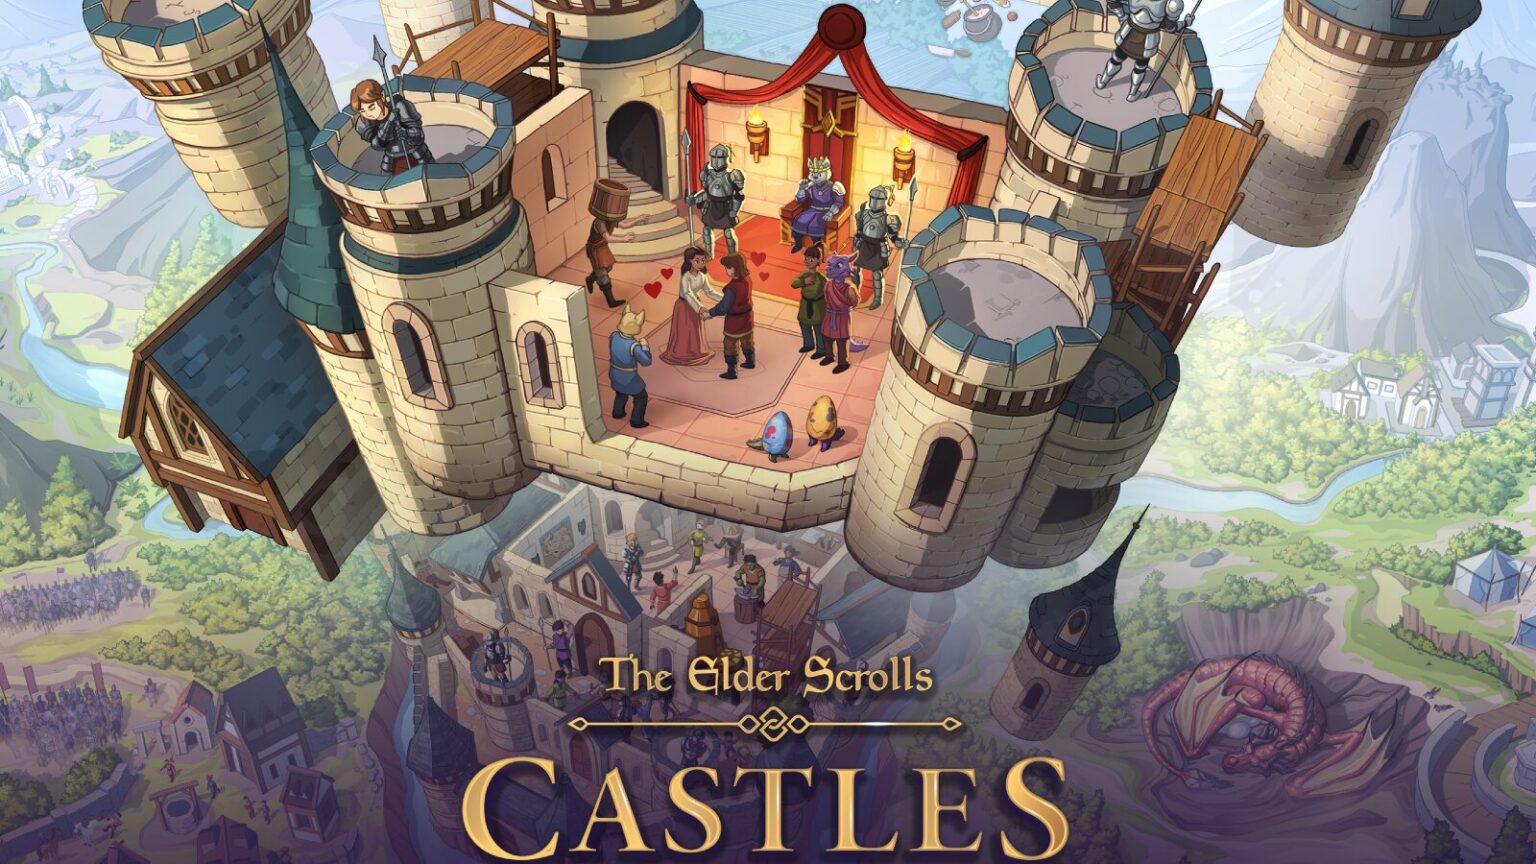 Fantasy castle gathering in The Elder Scrolls Castles game